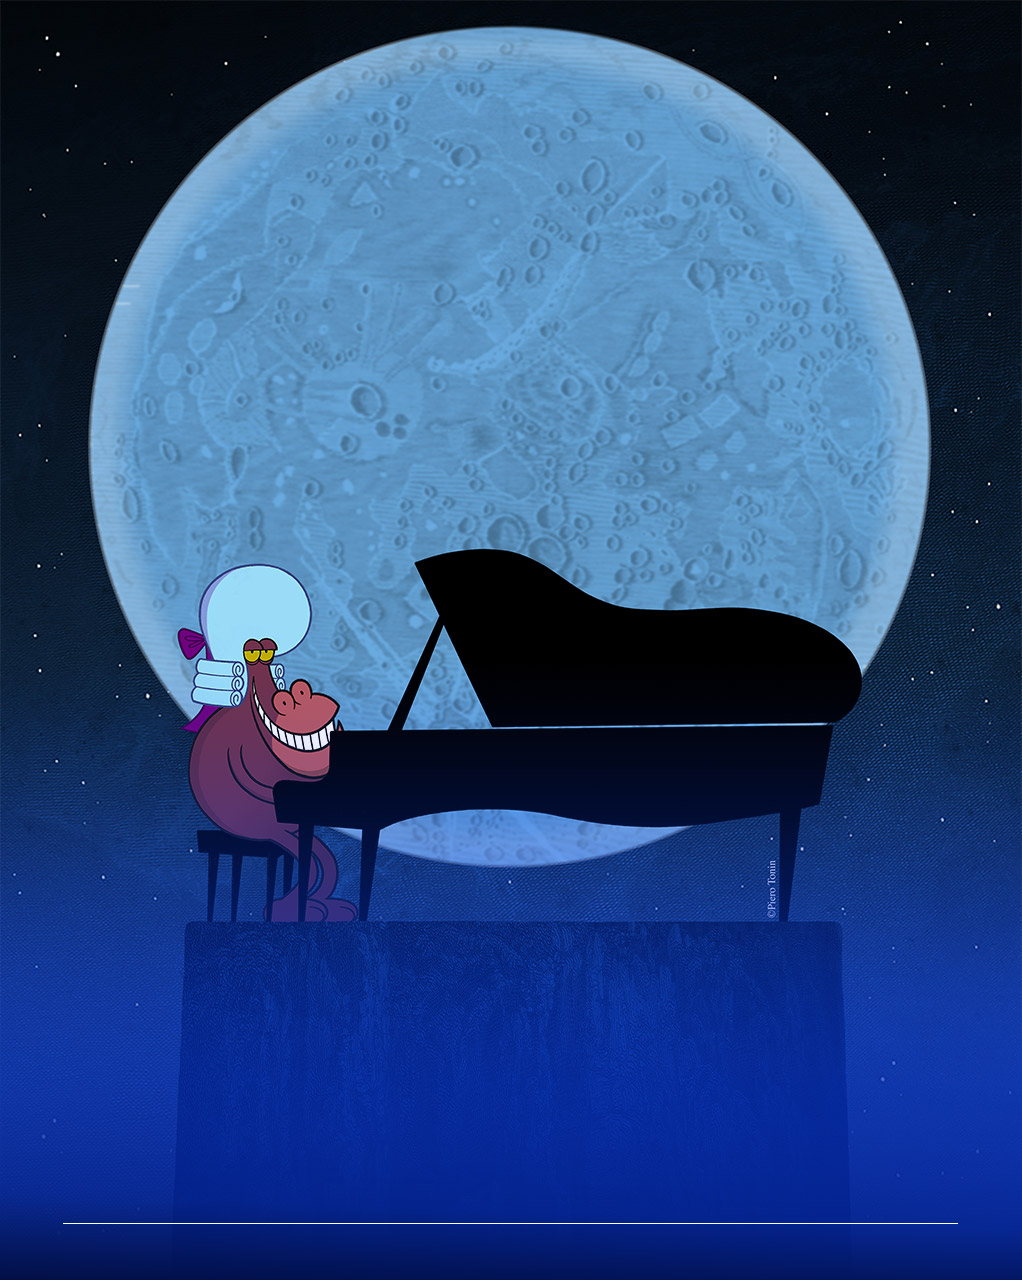 Immagine di un'illustrazione che ritrae un personaggio antropomorfo con la parrucca da Mozart che suona il pianoforte davanti a una luna piena